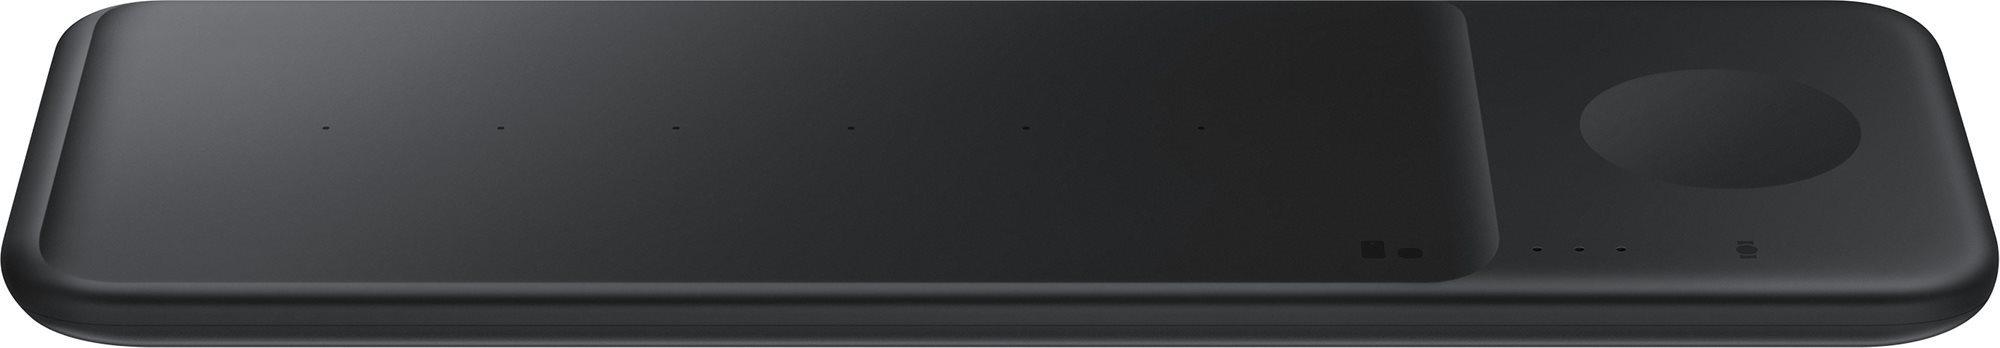 Samsung többállású vezeték nélküli töltő fekete